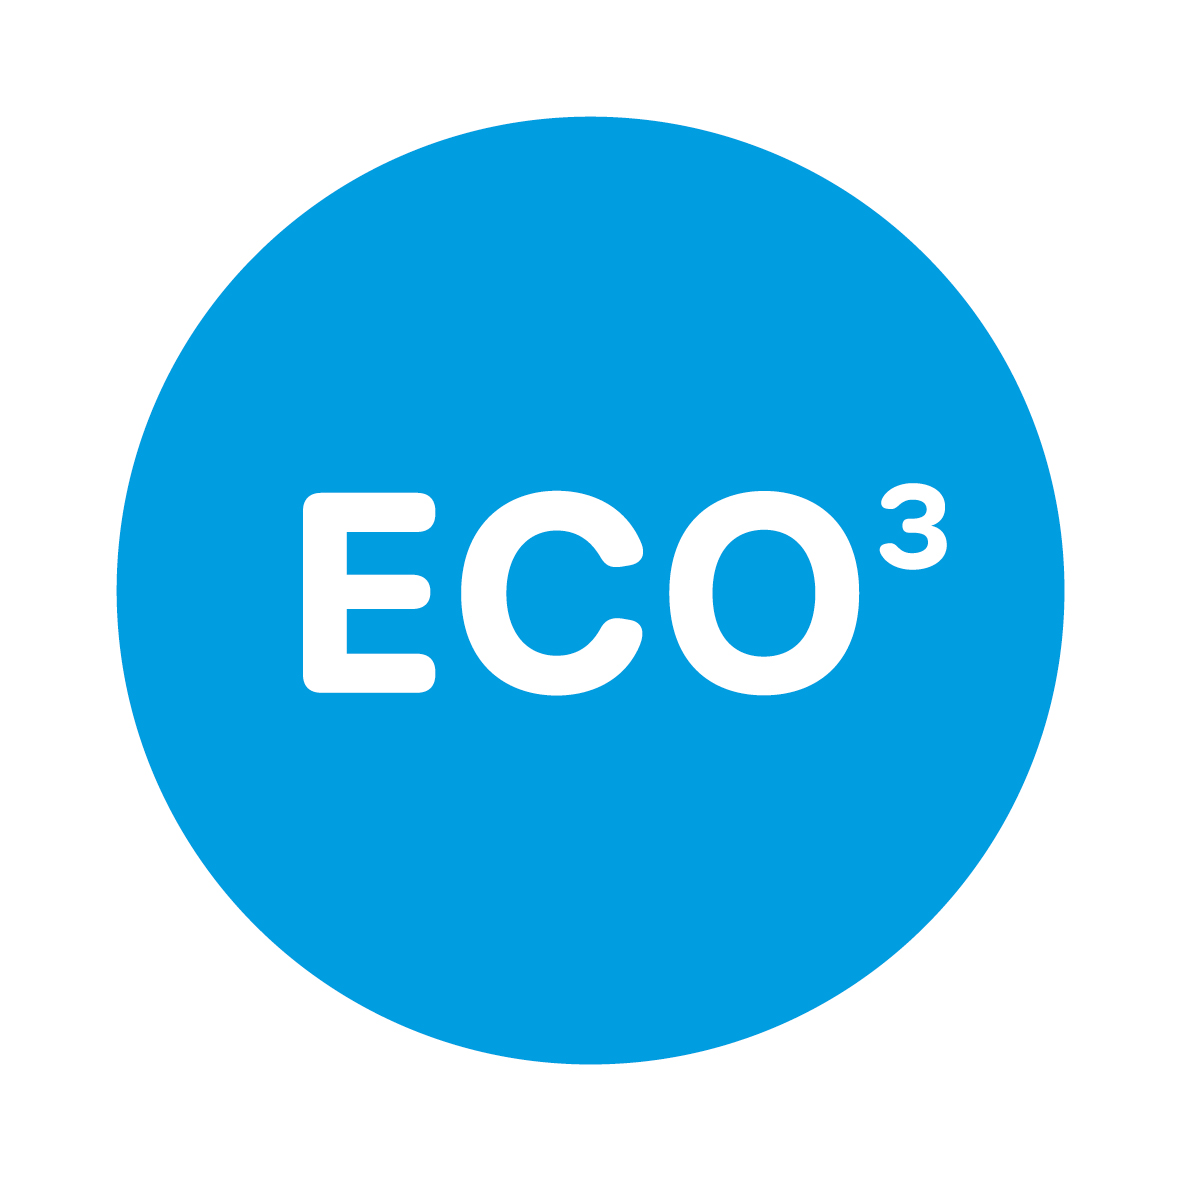 detect remove reuse beschreibt die Wasser 3.0 im Bereich circular economy. Nur wer den Kreislauf schließt, arbeitet nachhaltig. Die Wiederverwertung unserer Agglomerate erforschen wir bei reuse. 